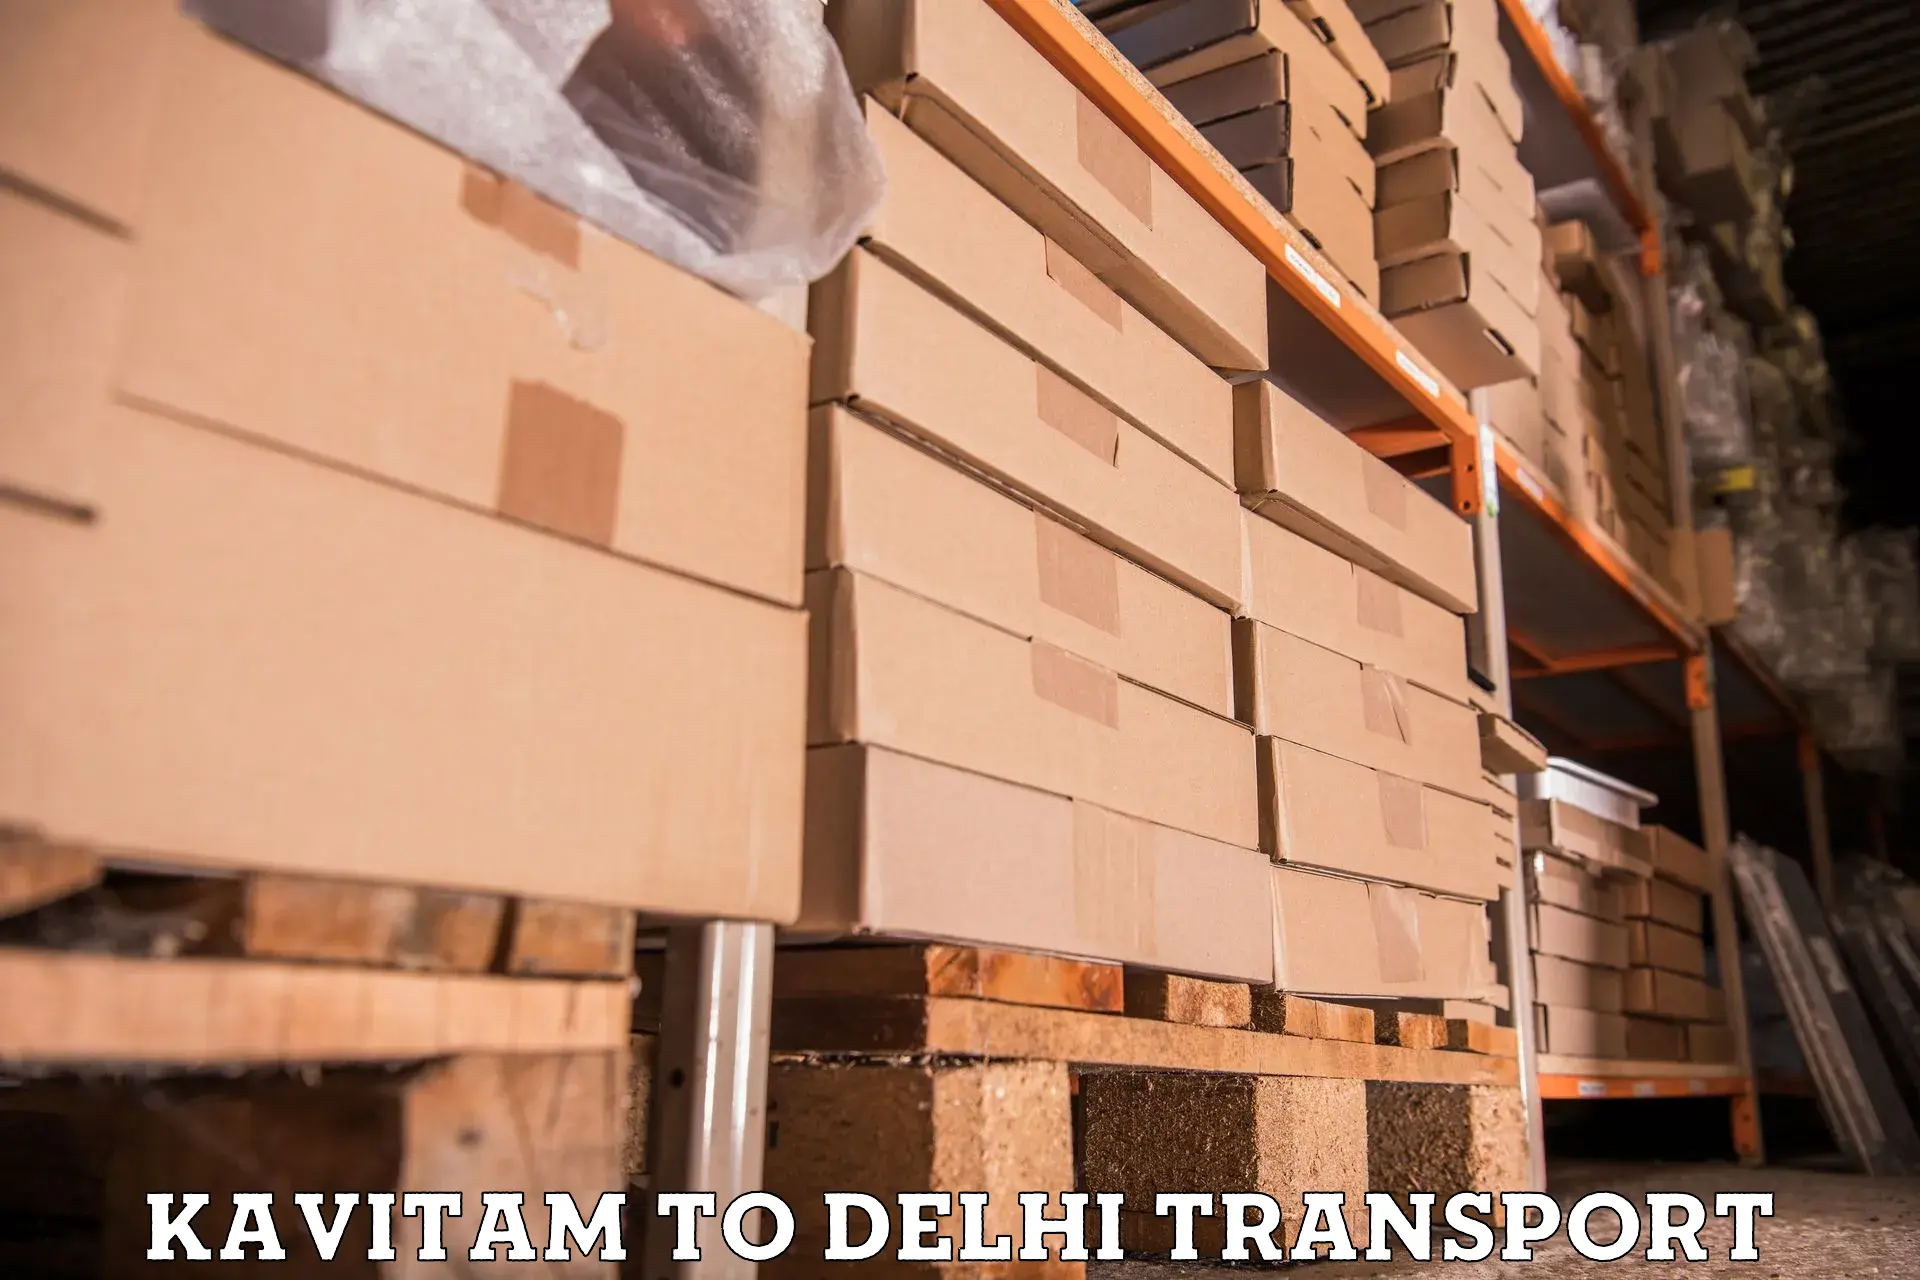 Furniture transport service Kavitam to Kalkaji